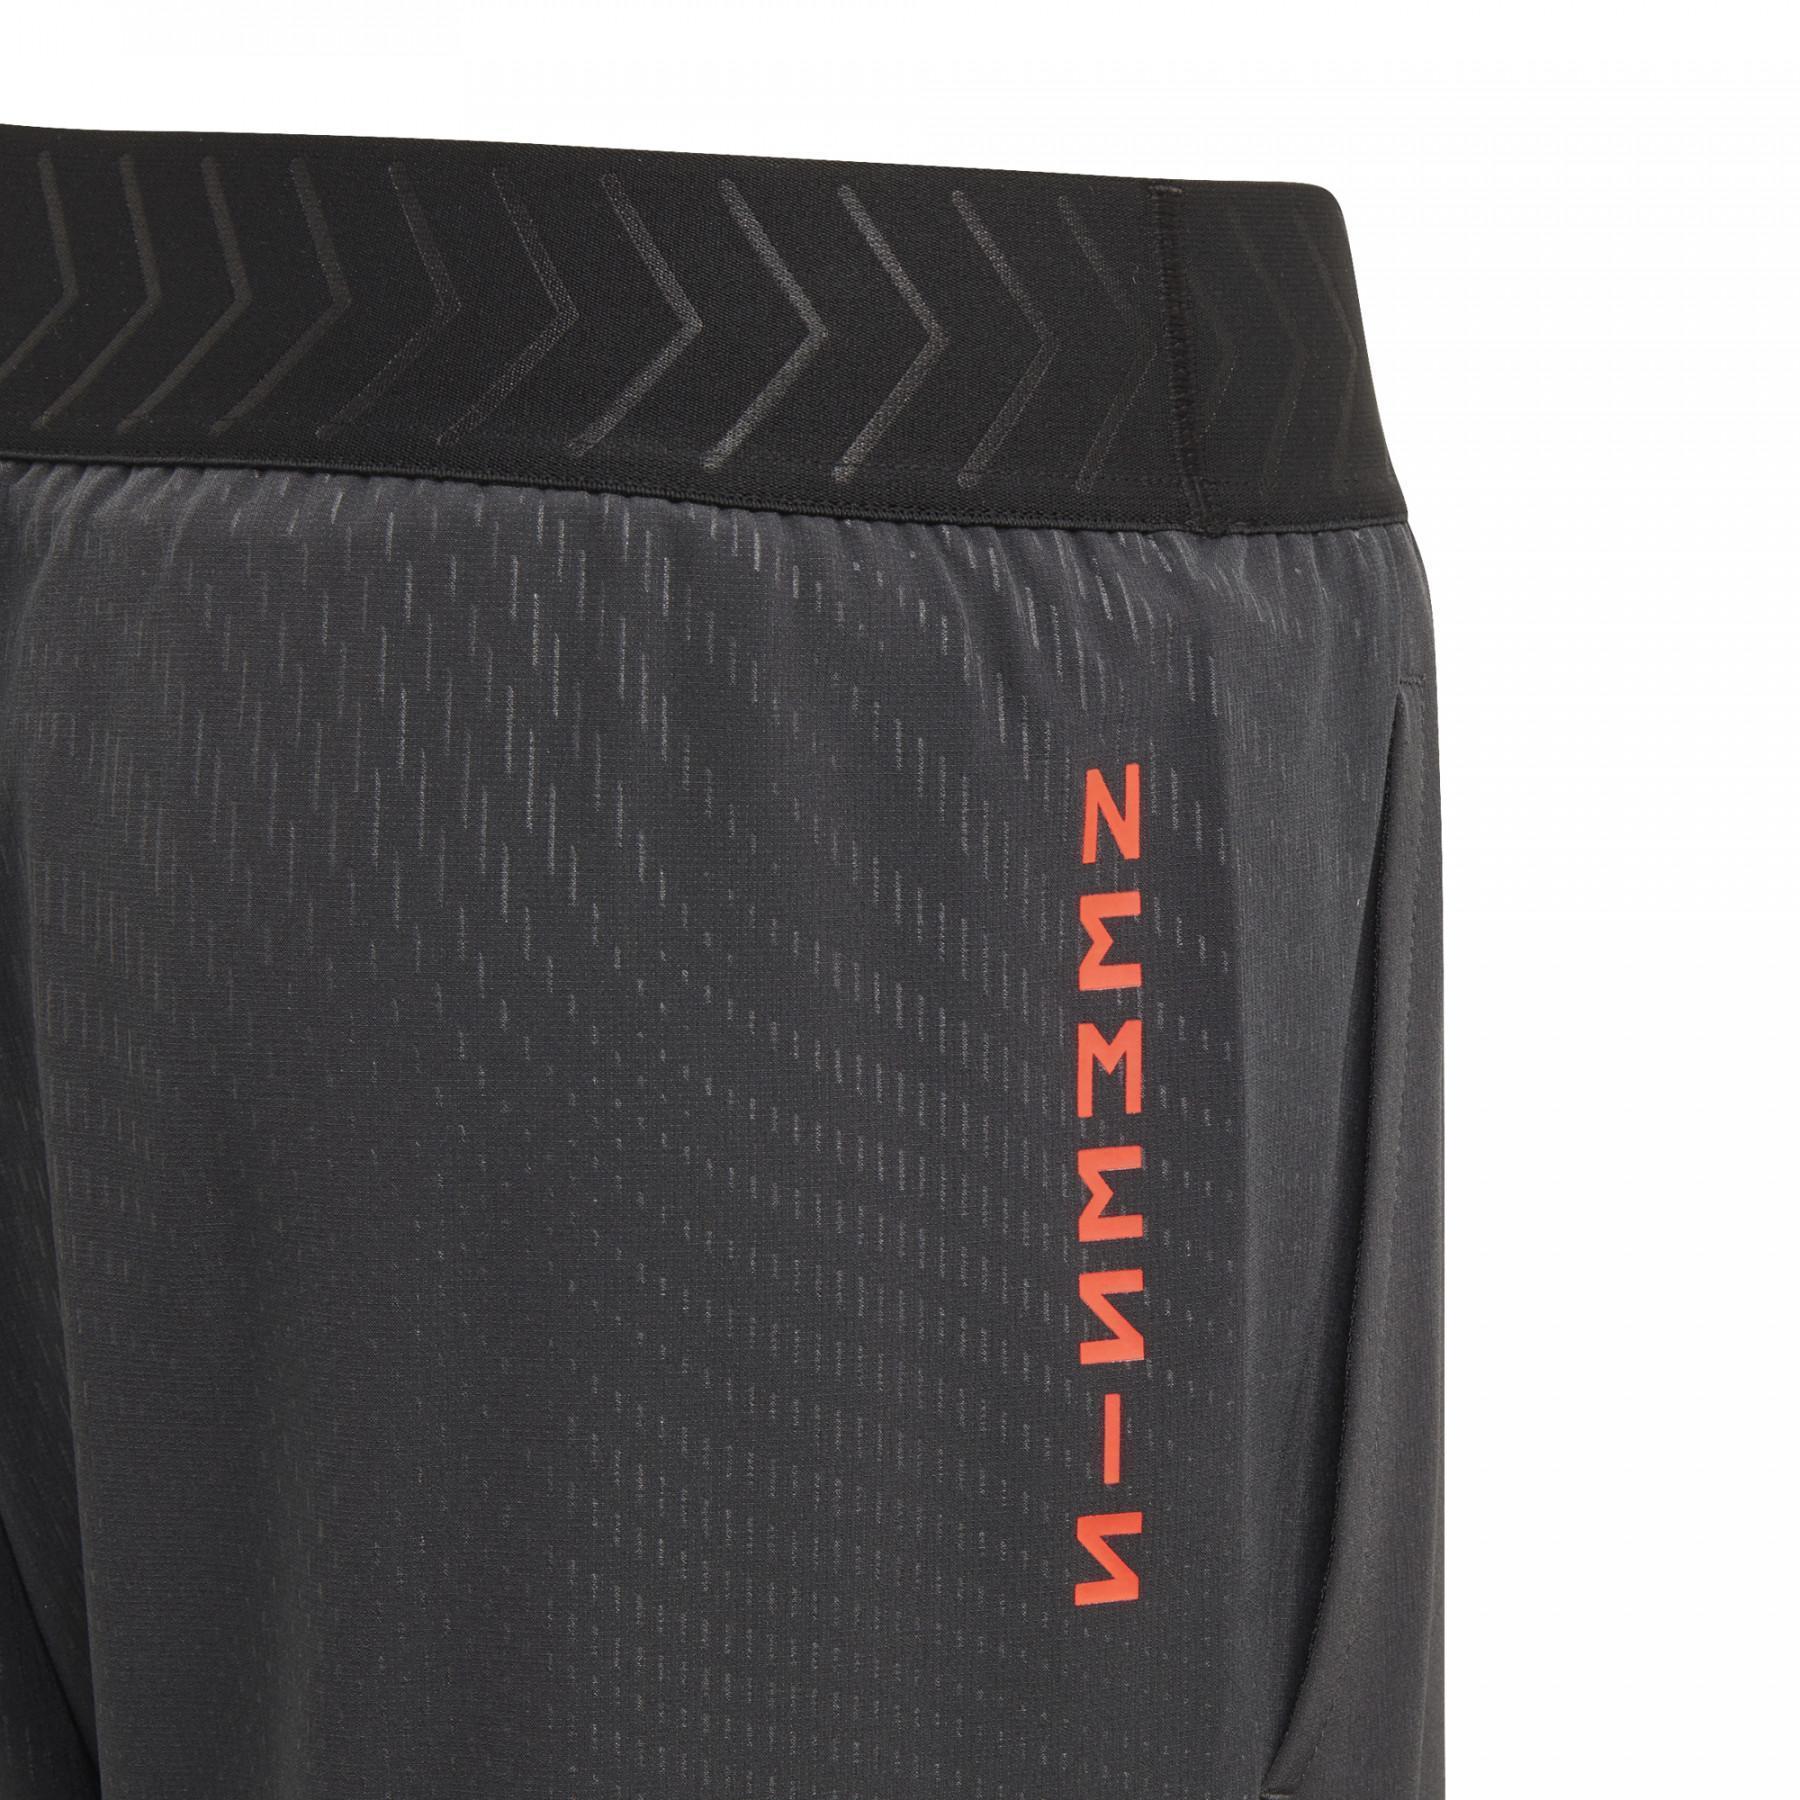 Pantalones cortos para niños adidas Nemeziz